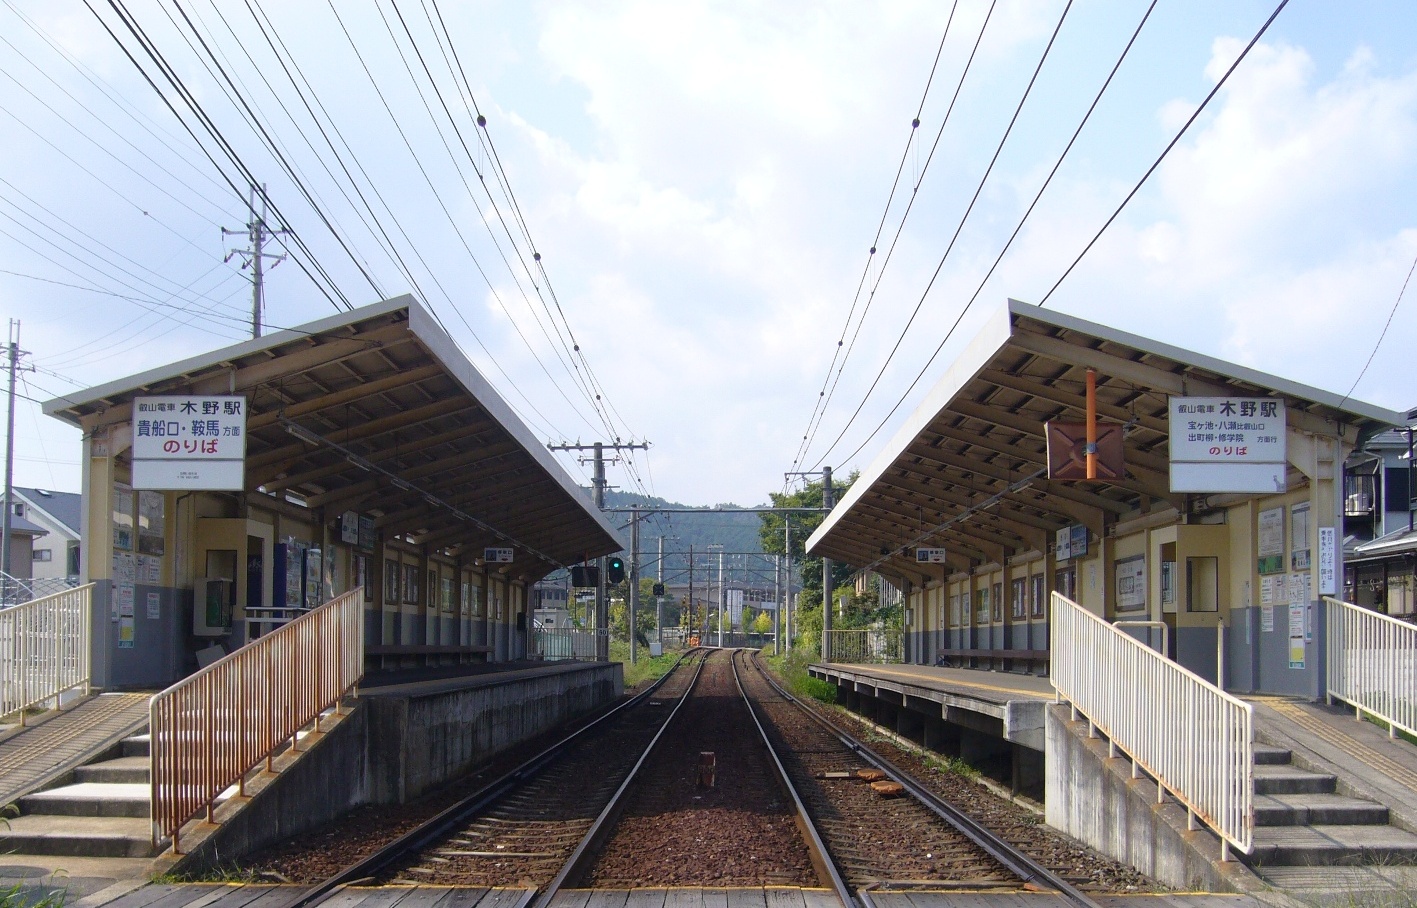 【东南西北】—日本四大最远车站